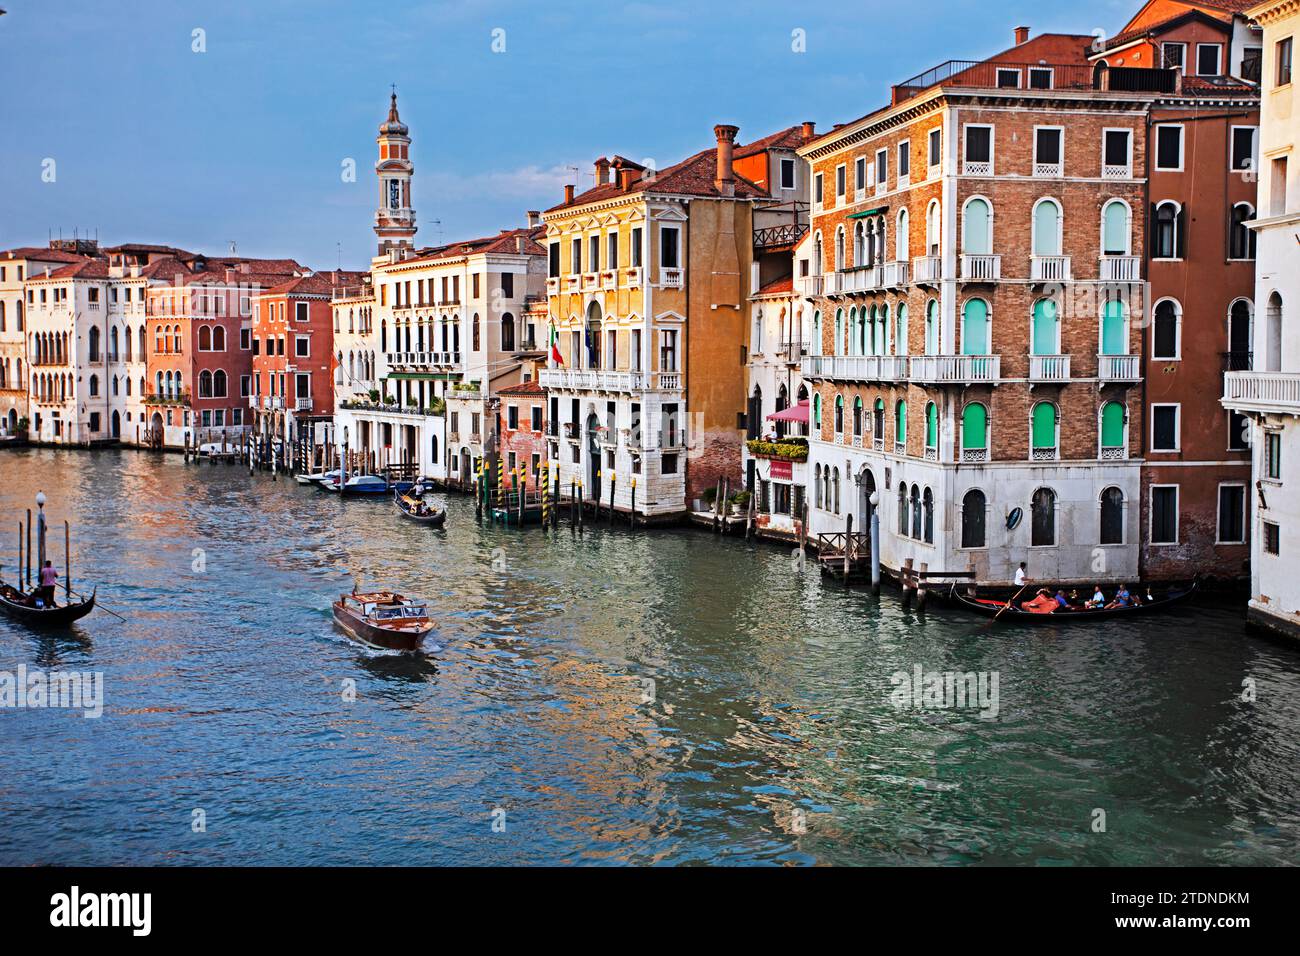 Splendidi edifici stratificati lungo il canale veneziano con gondole e trasporto pubblico su acqua a Venezia. Viaggi e turismo Foto Stock